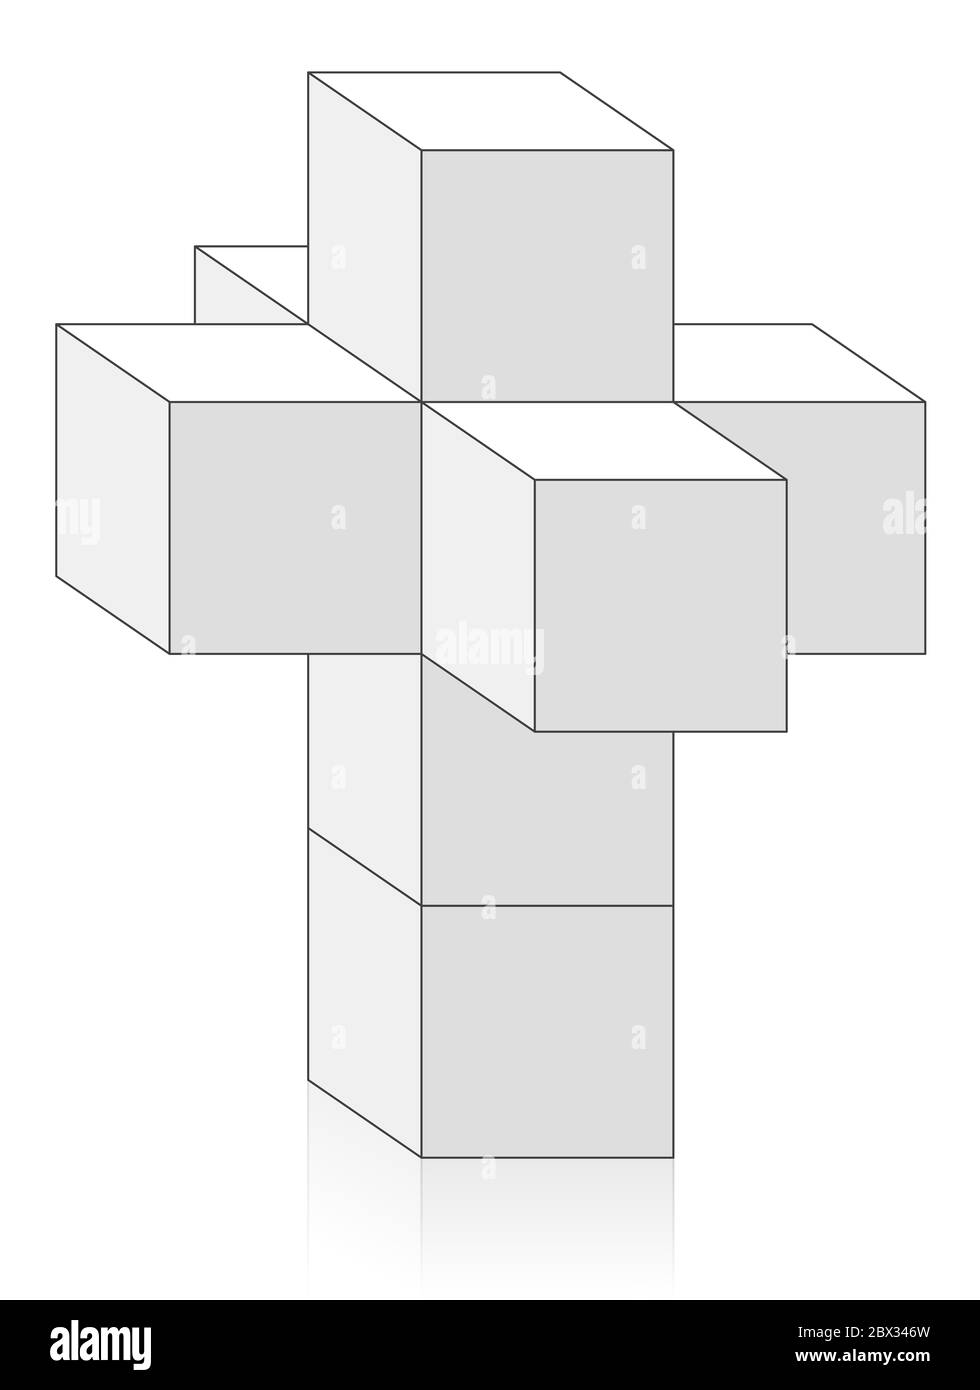 Tesseract, Hypercubus oder Octachoron in der 4. Dimension gefaltet, um ein 4D Hypercube Netz zu erhalten, ein spezielles mathematisches und geometrisches Thema mit acht Würfeln. Stockfoto